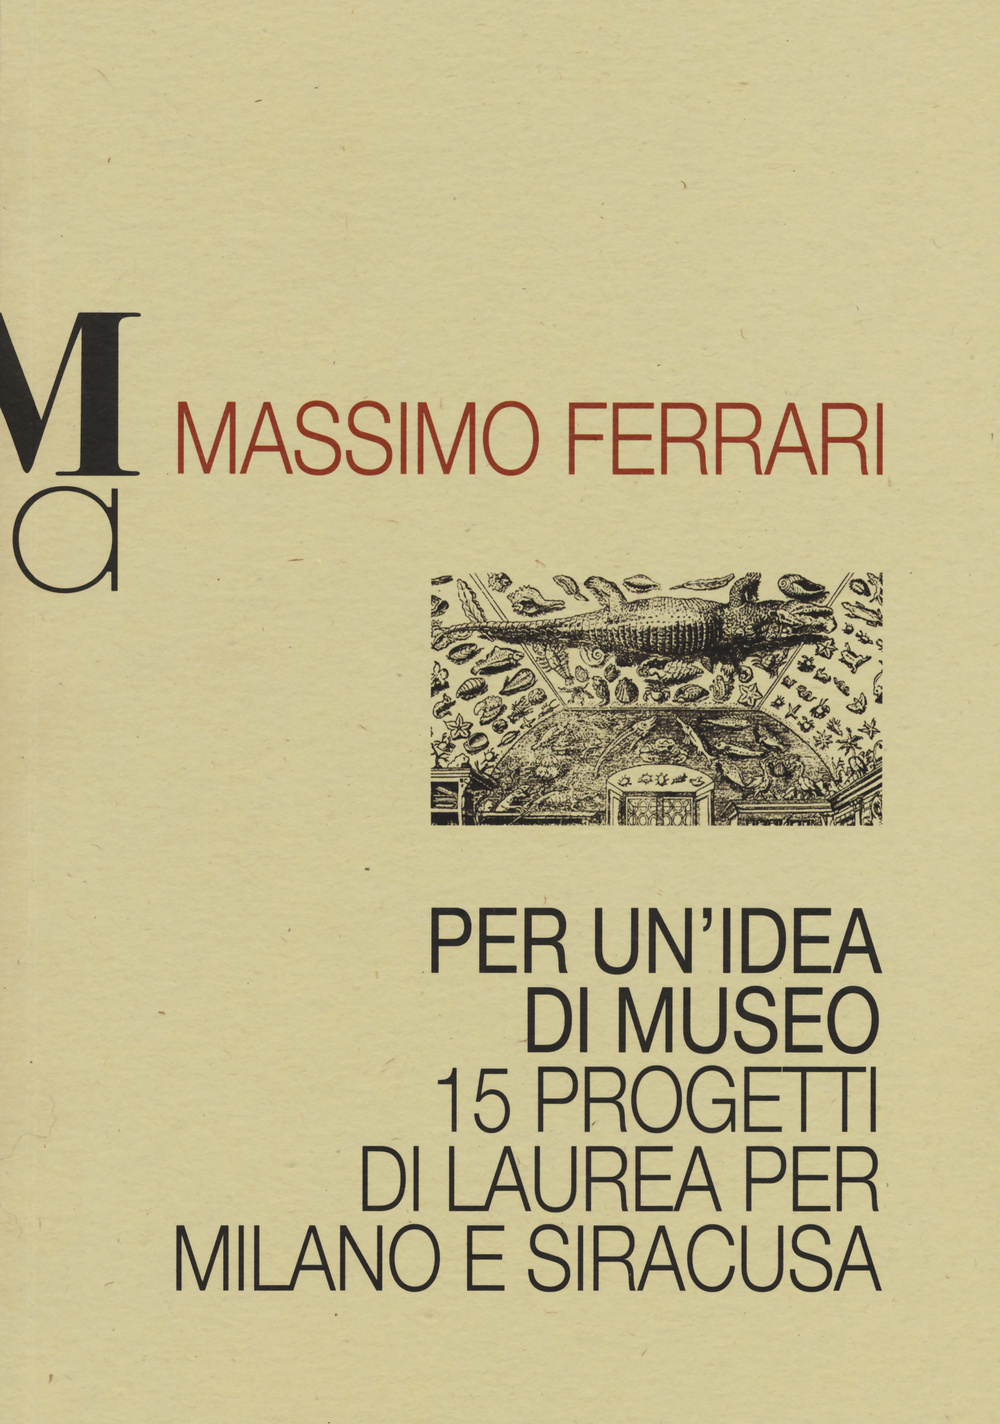 Per un'idea di museo. 15 progetti di laurea per Milano e Siracusa